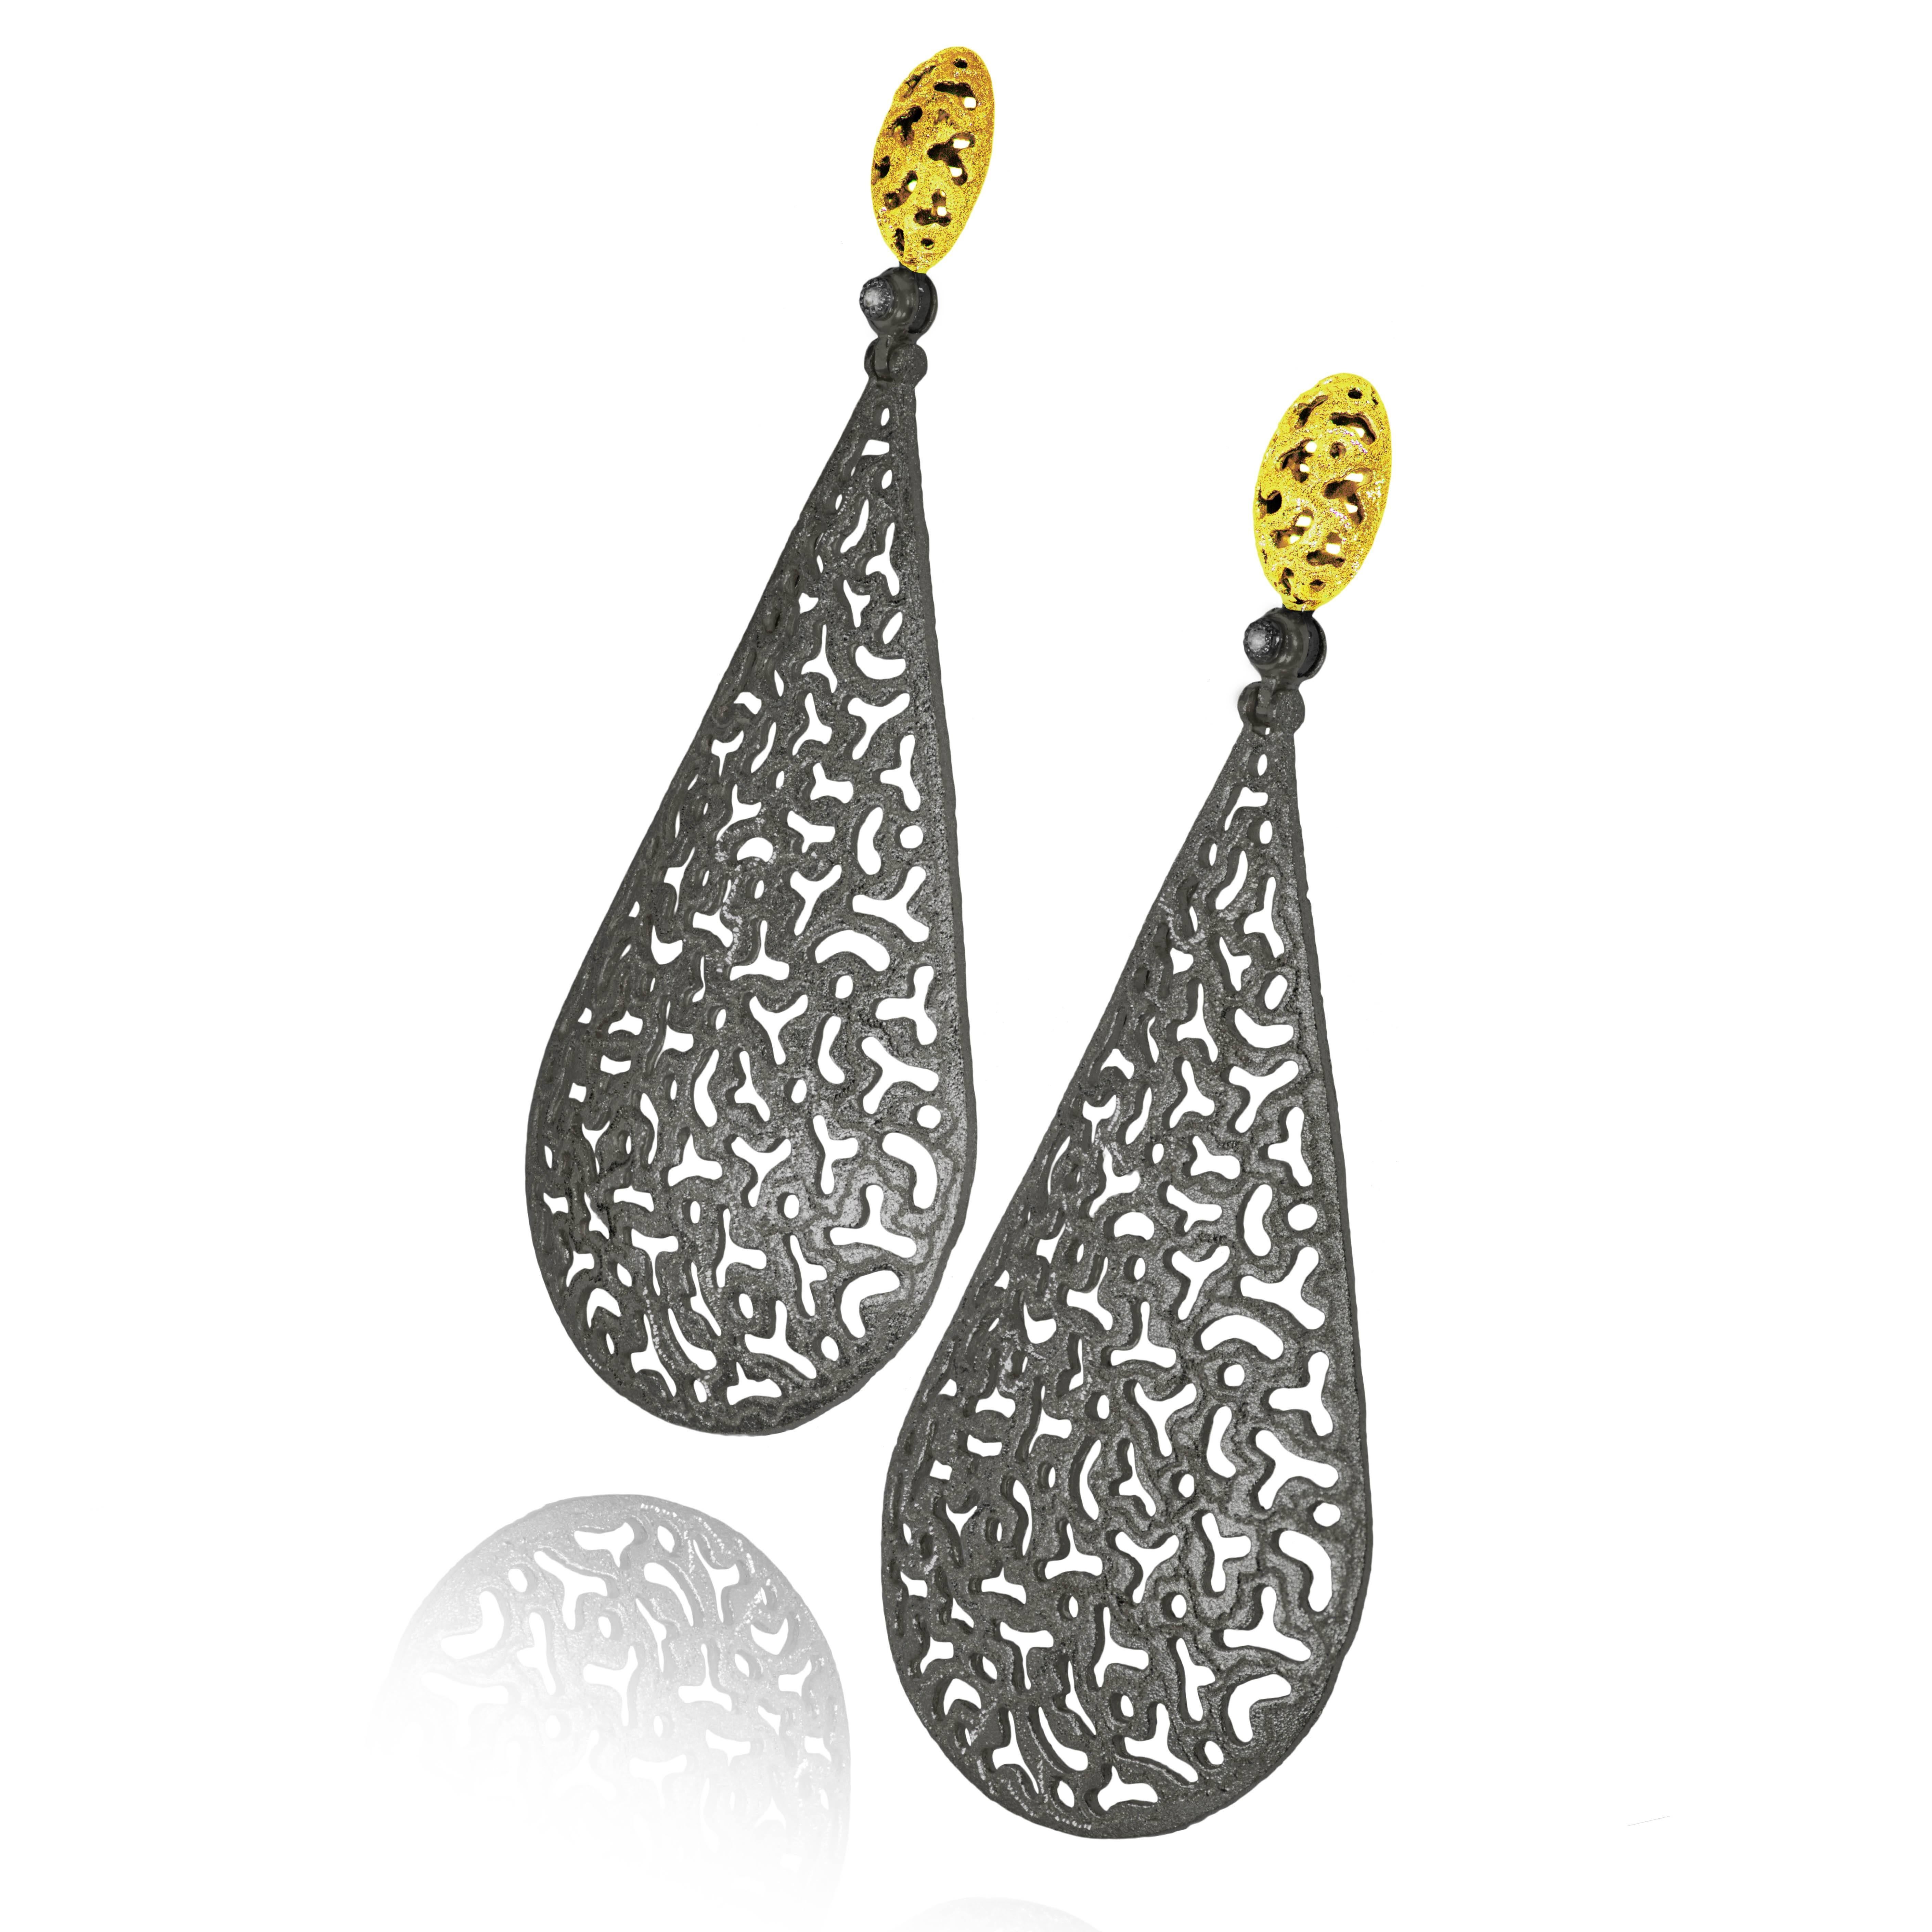 Modern Drop Dangle Gold Earrings w Textured Open Work by Alex Soldier Ltd Ed Handmade